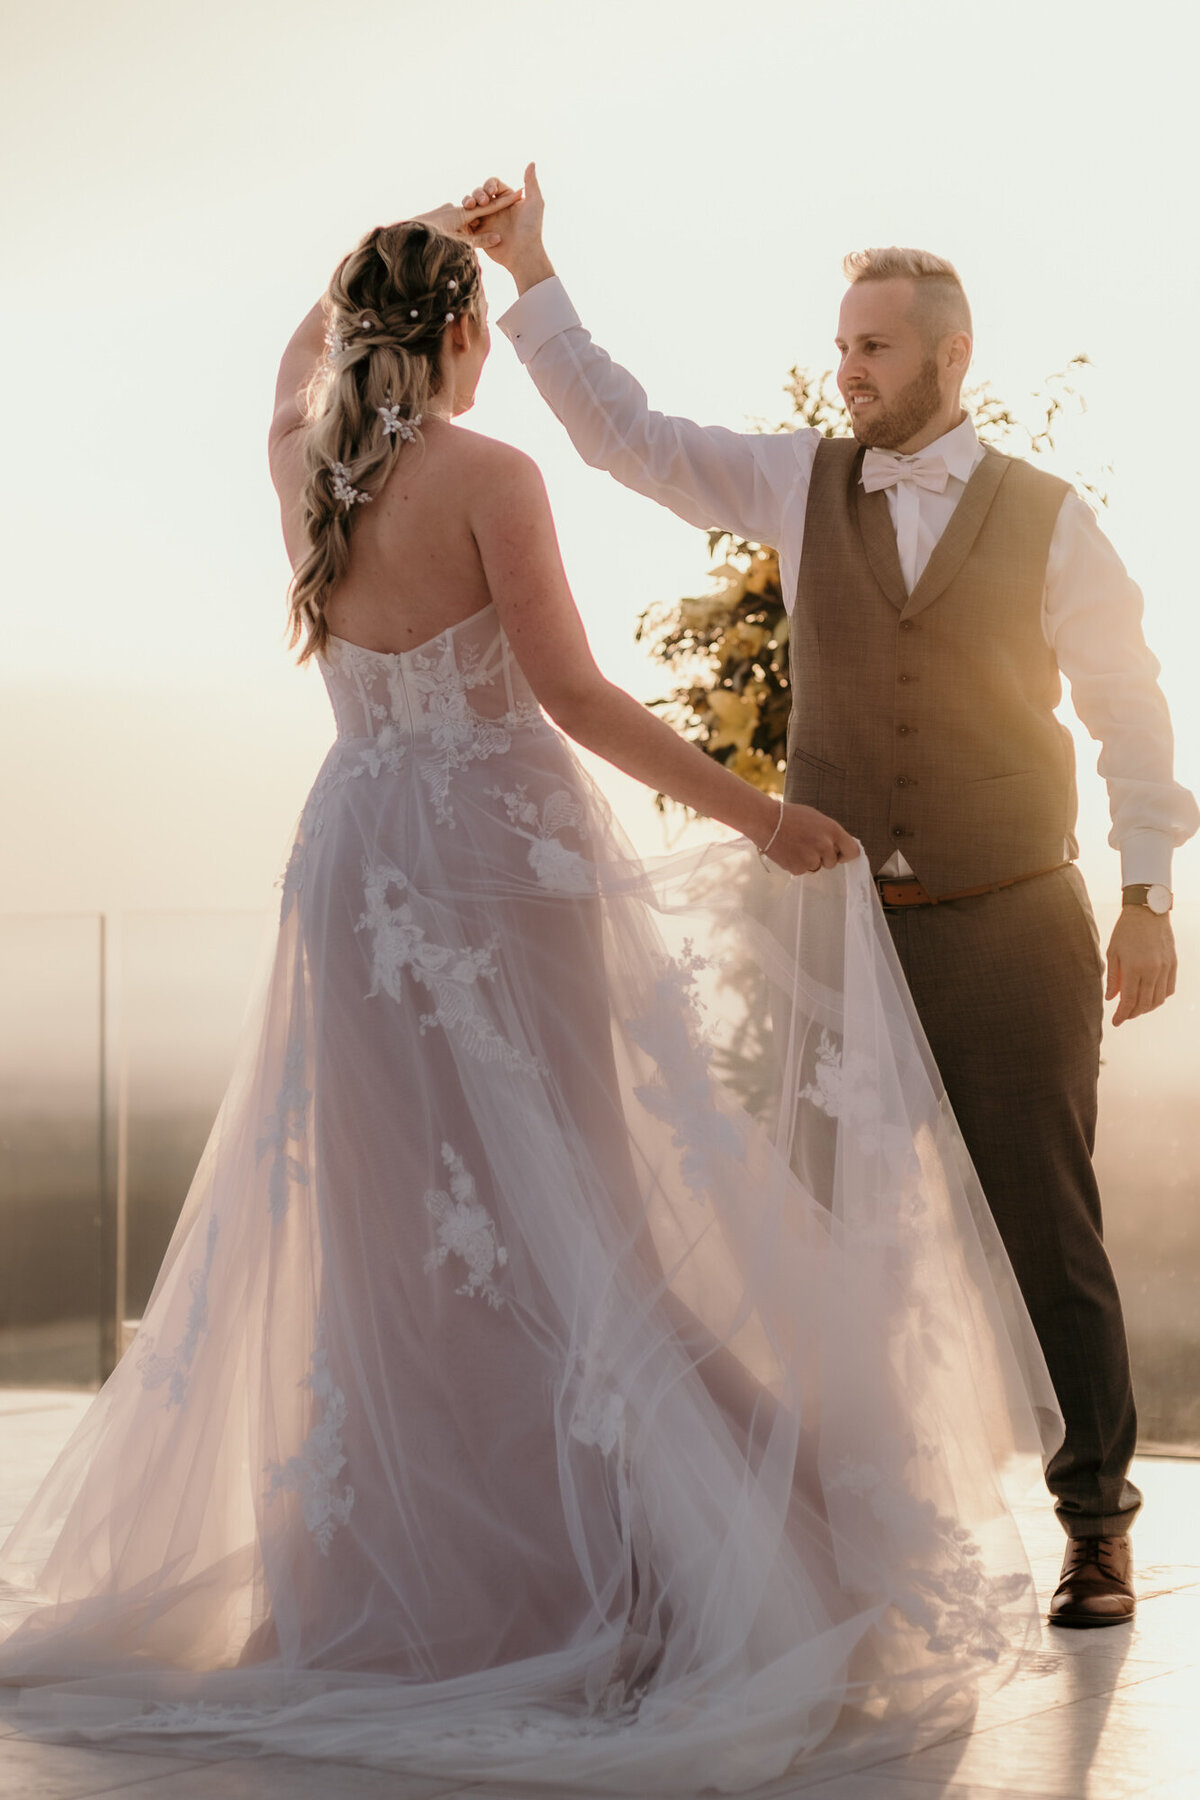 Die Braut hält mit einer Hand ihr Kleid, während der Bräutigam sie im Kreis dreht.